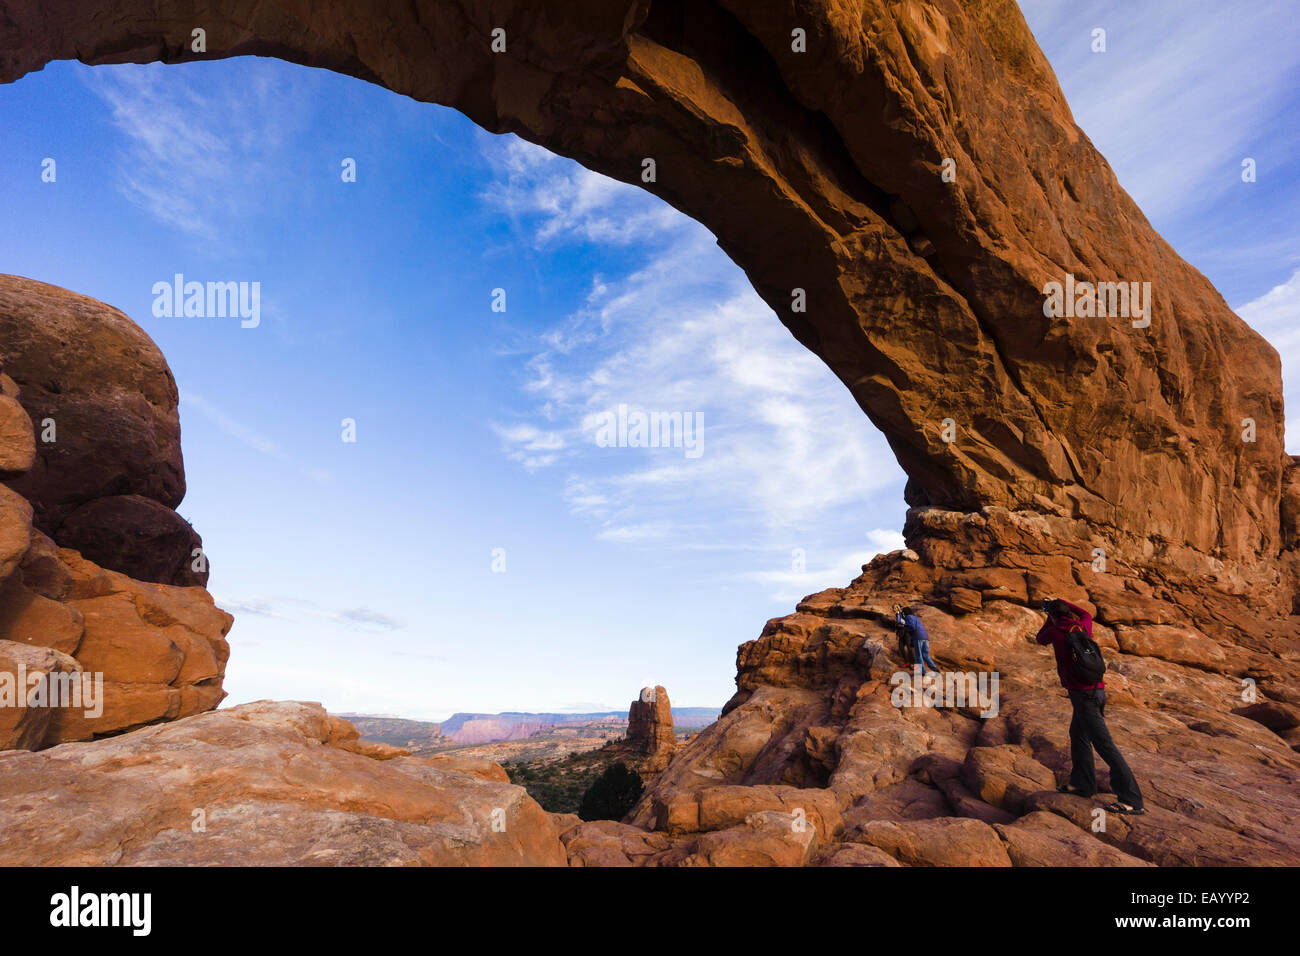 Finestra del nord Arch. Parco Nazionale di Arches, Moab, Utah, Stati Uniti d'America. Foto Stock